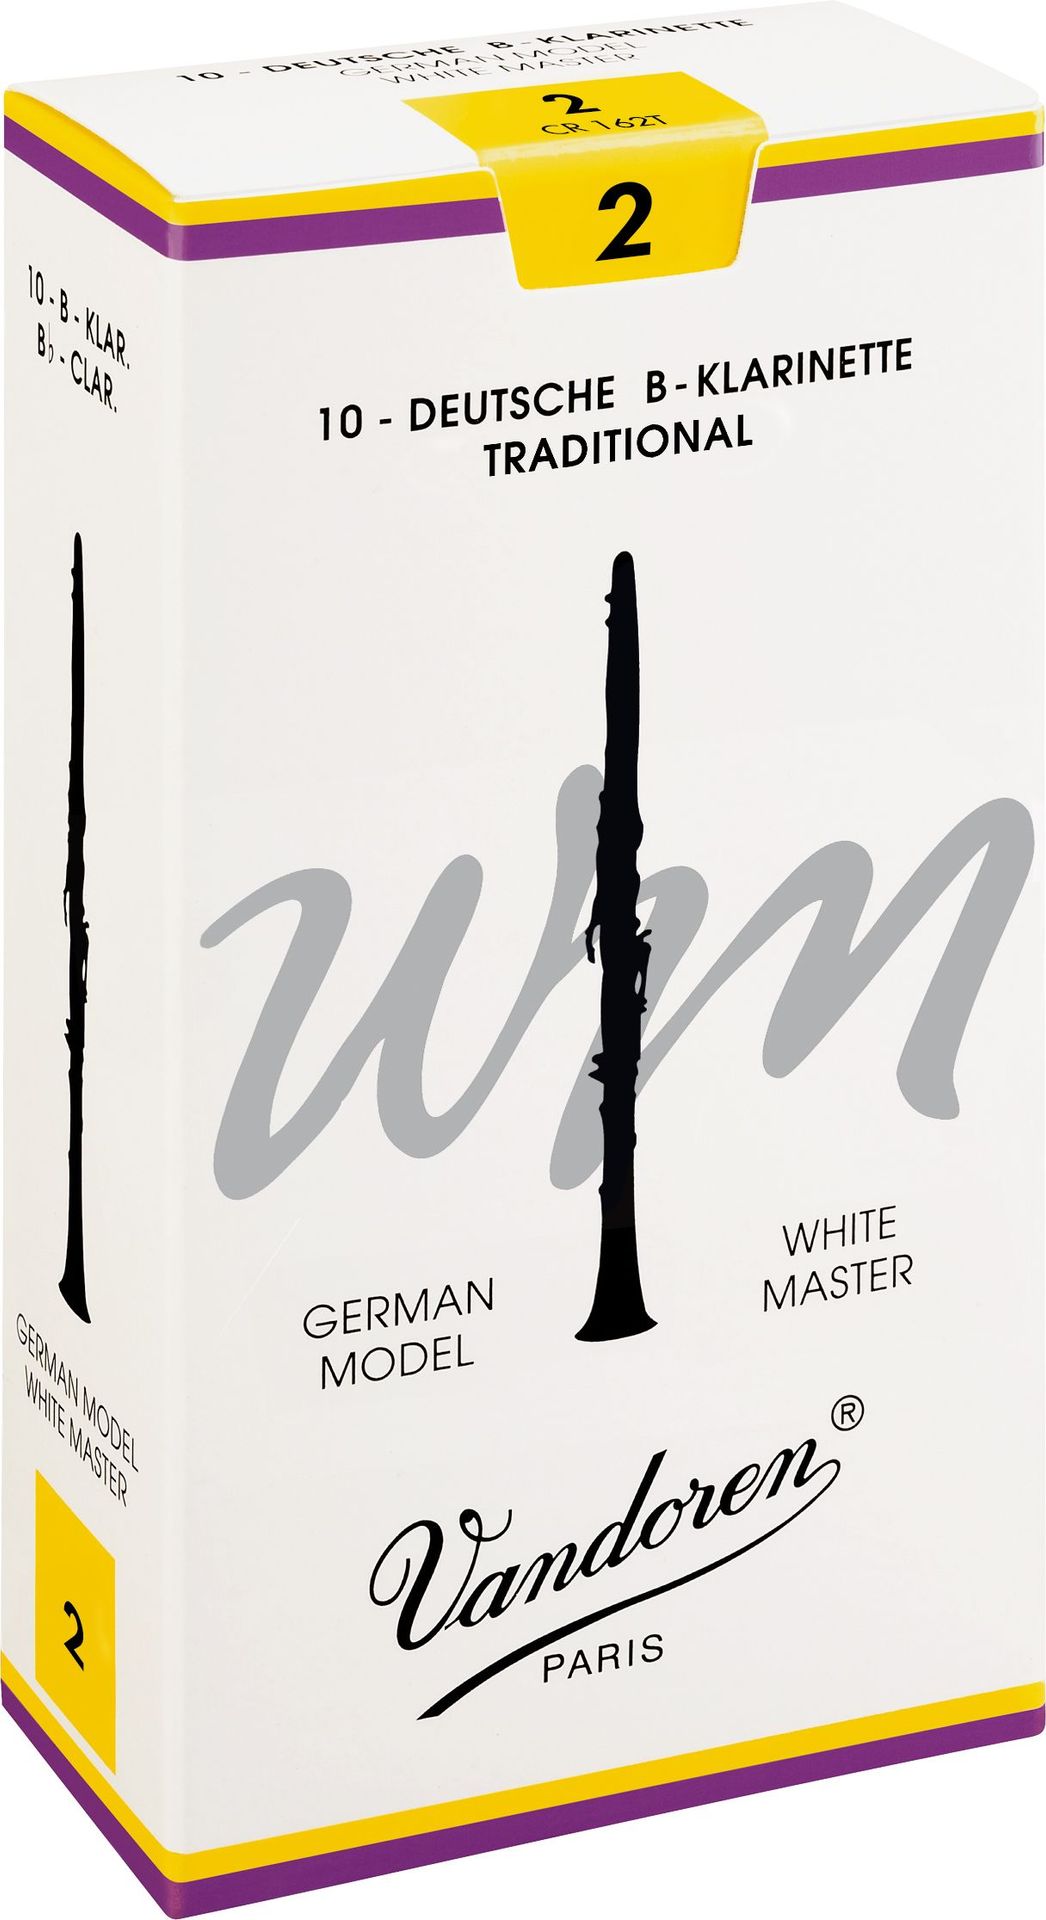 Vandoren White Master B-Klarinette deutsch 2,0 Traditional Blatt